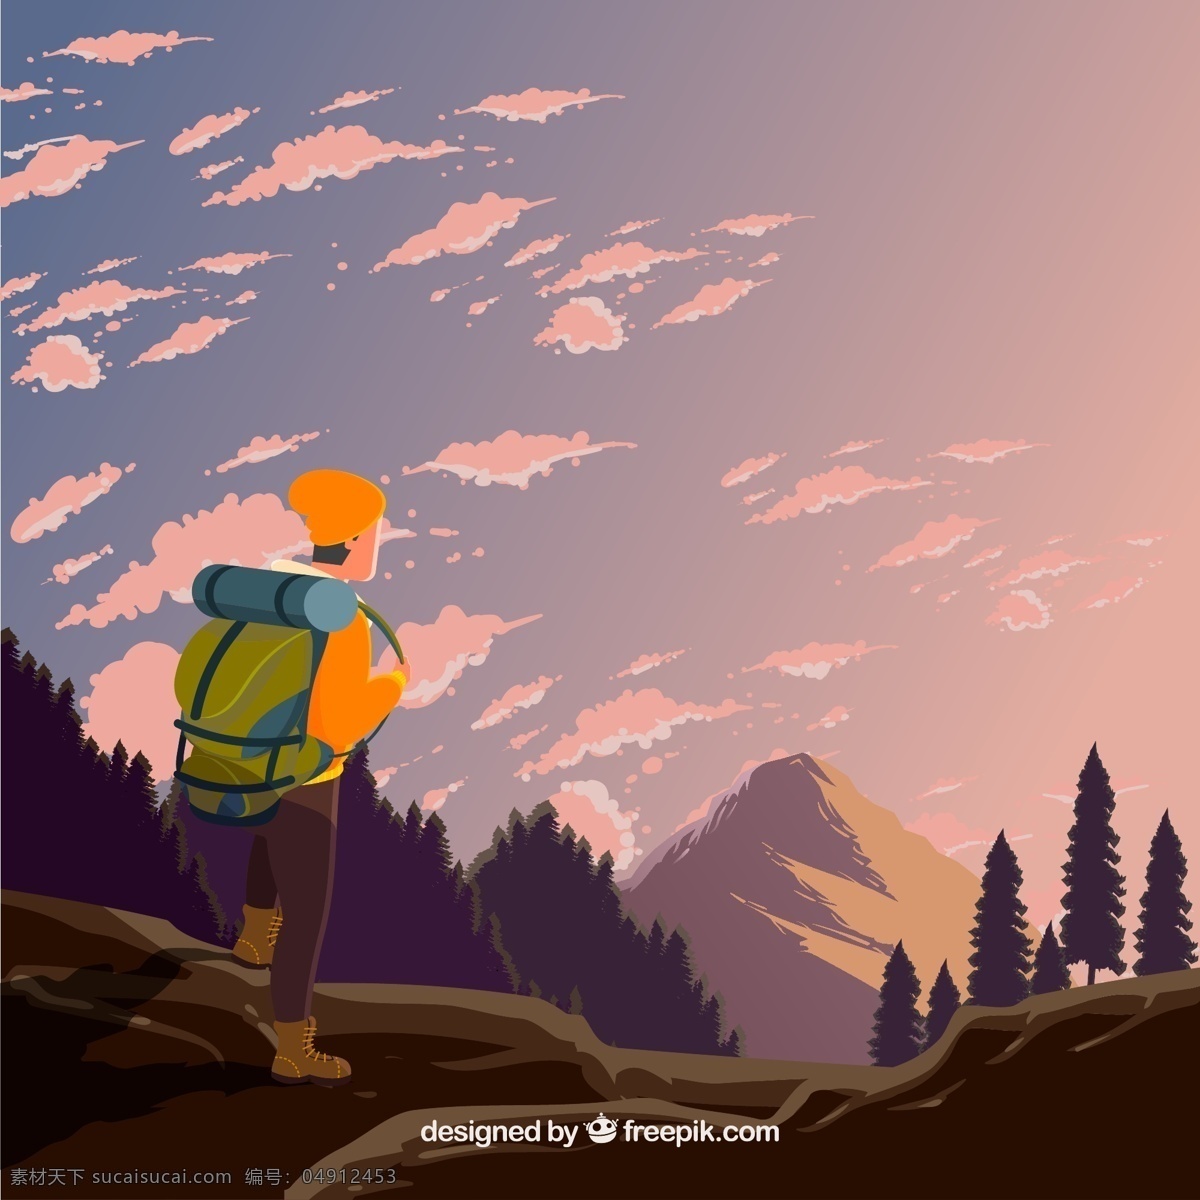 创意 山间 背包 旅行 男子 背影 矢量图 登山 云 树木 山坡 山 背包客 动漫动画 动漫人物